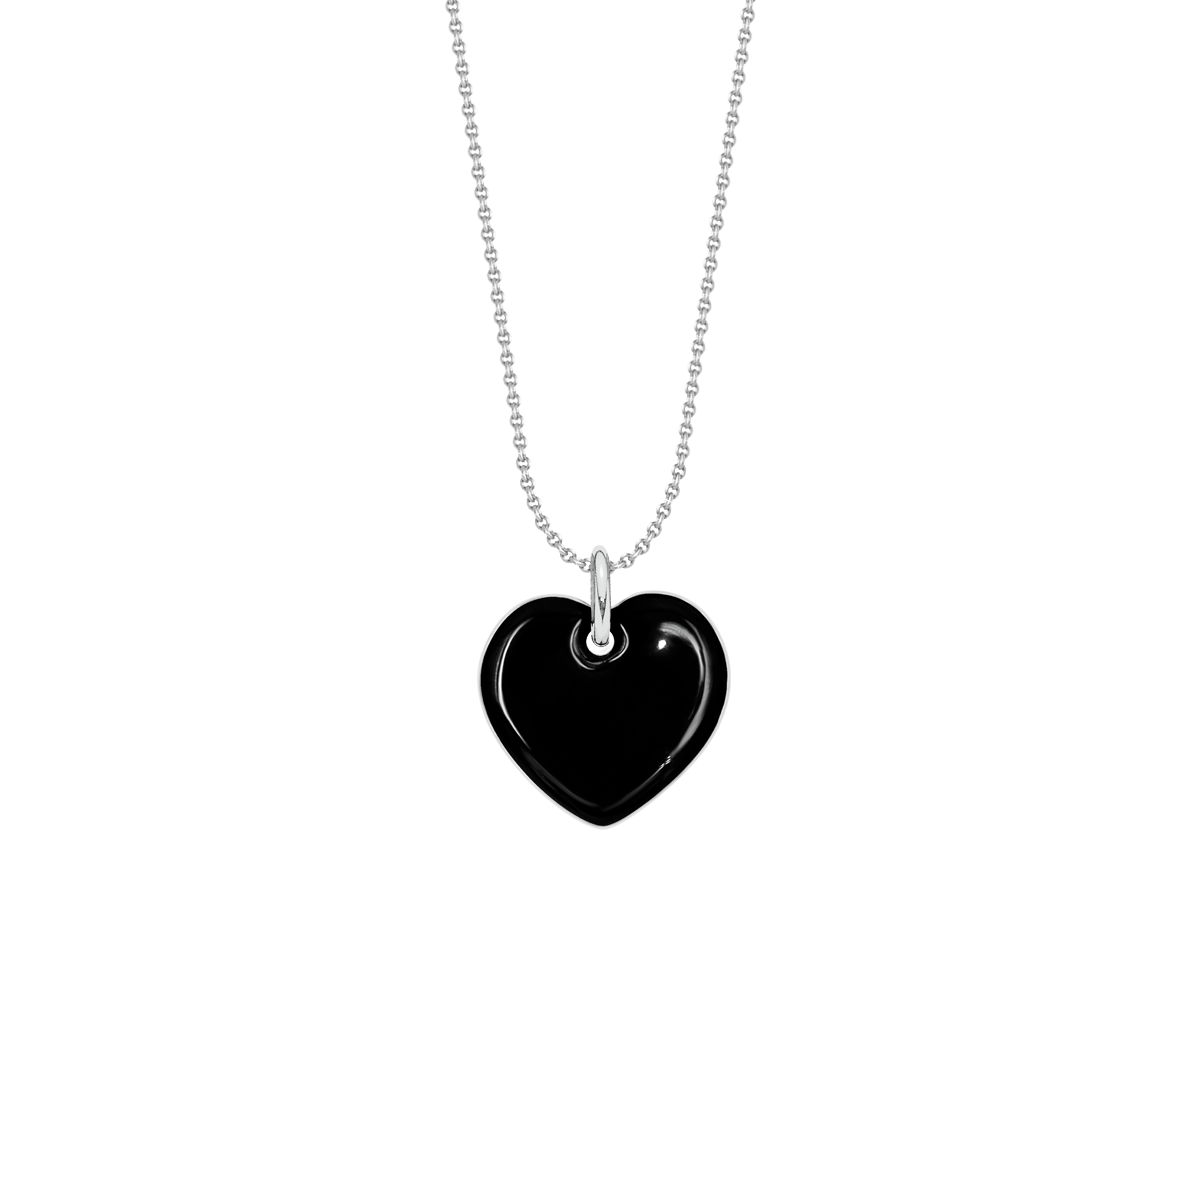 Halskette mit schwarzfarbenem 1,5 cm Herz versilbert